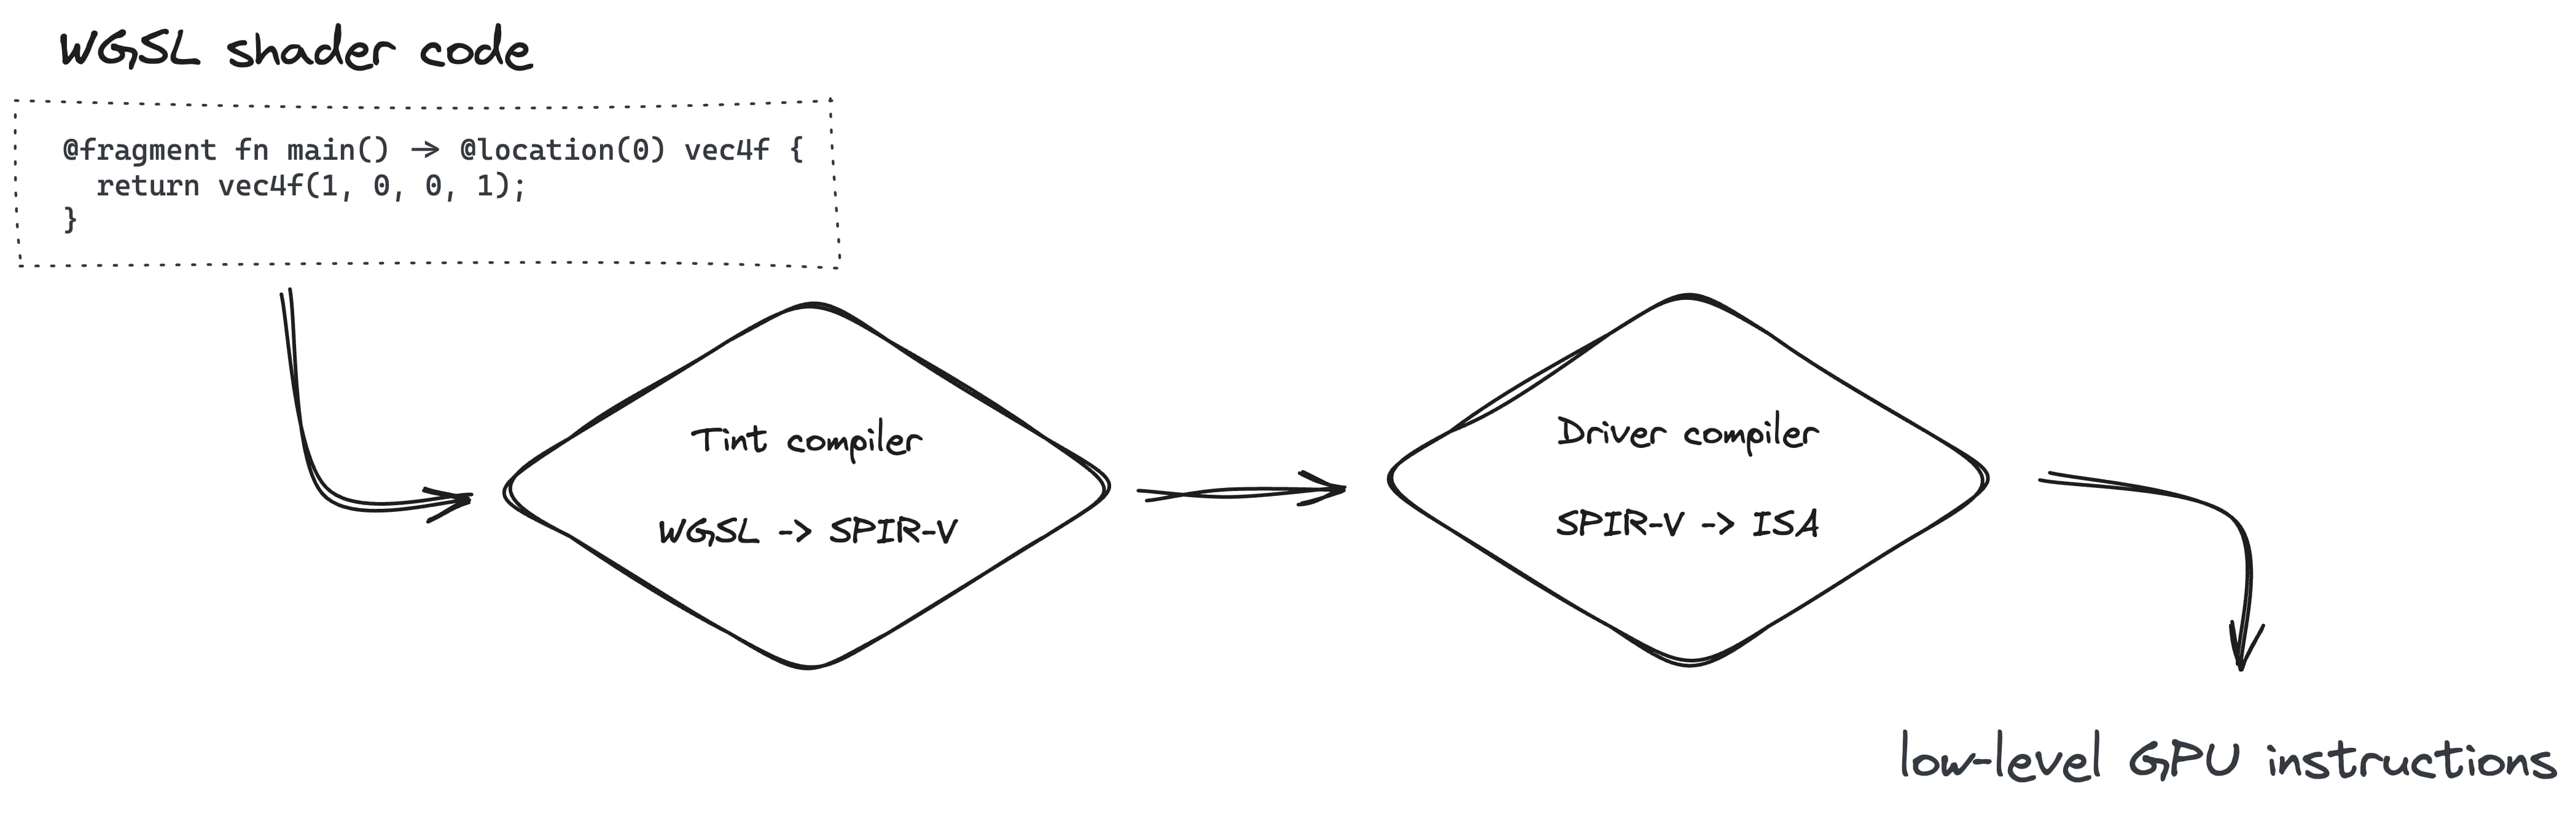 La creazione della pipeline di rendering prevede la conversione di WGSL in SPIR-V con il compilatore Tint, quindi in ISA con il compilatore del driver.